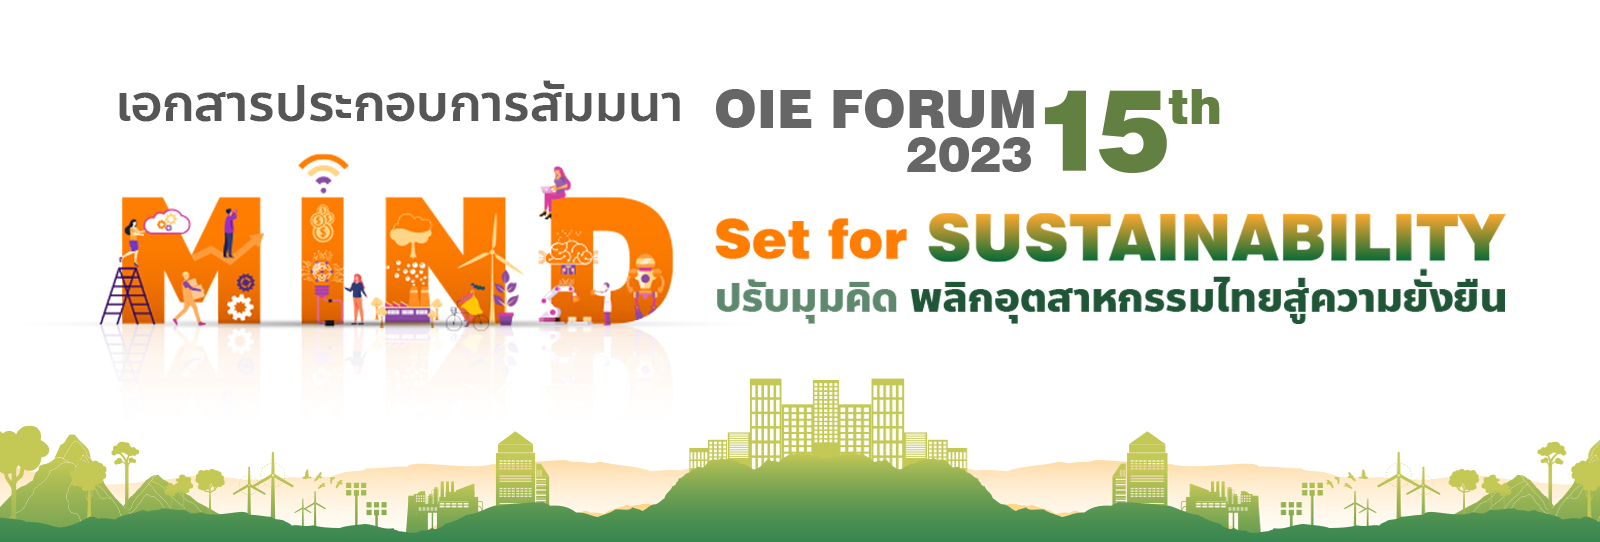 OIE Forum 2023